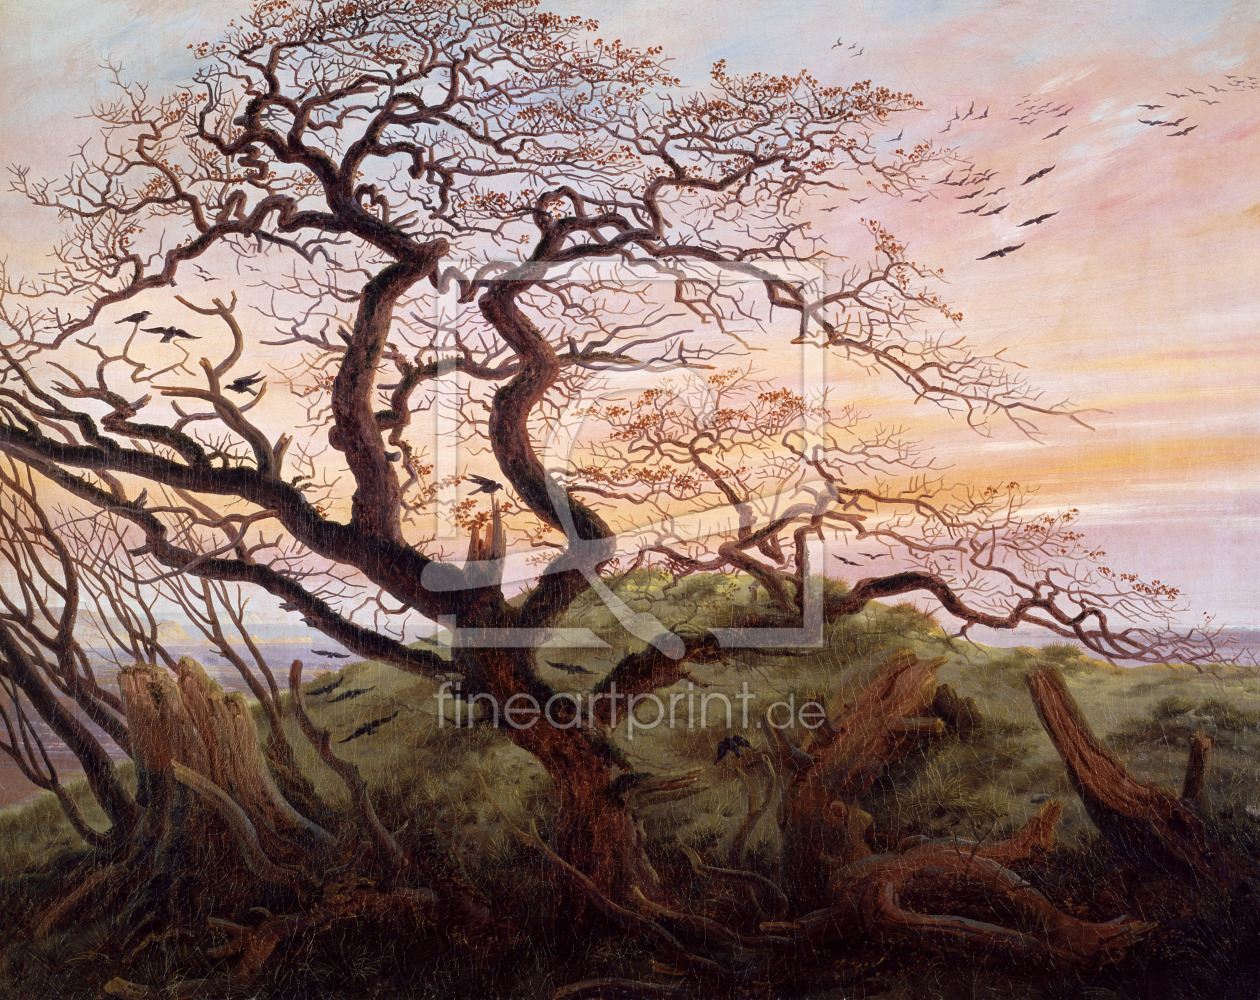 Bild-Nr.: 31000426 The Tree of Crows, 1822 erstellt von Friedrich, Caspar David